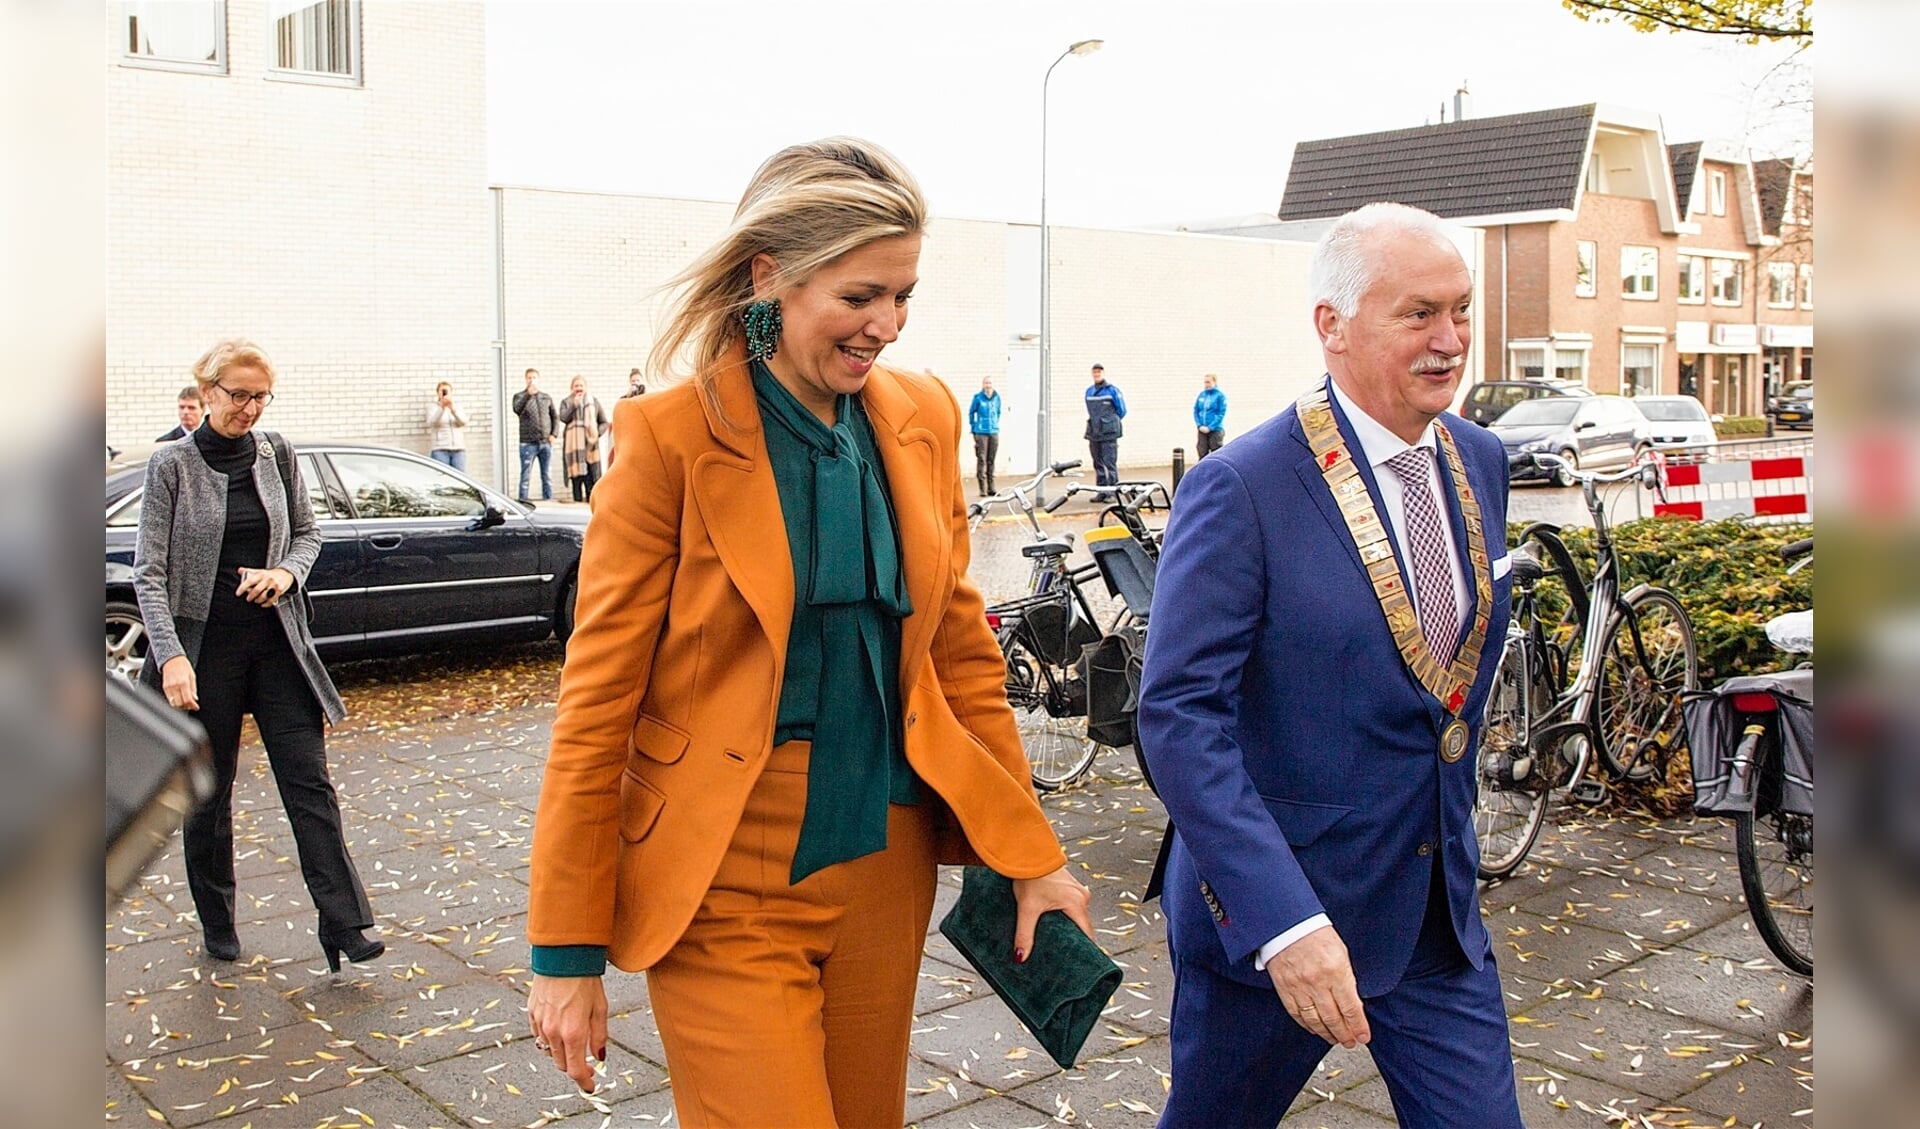 De burgemeester op de foto met koningin Maxima tijdens een bezoek aan Barneveld in 2016.